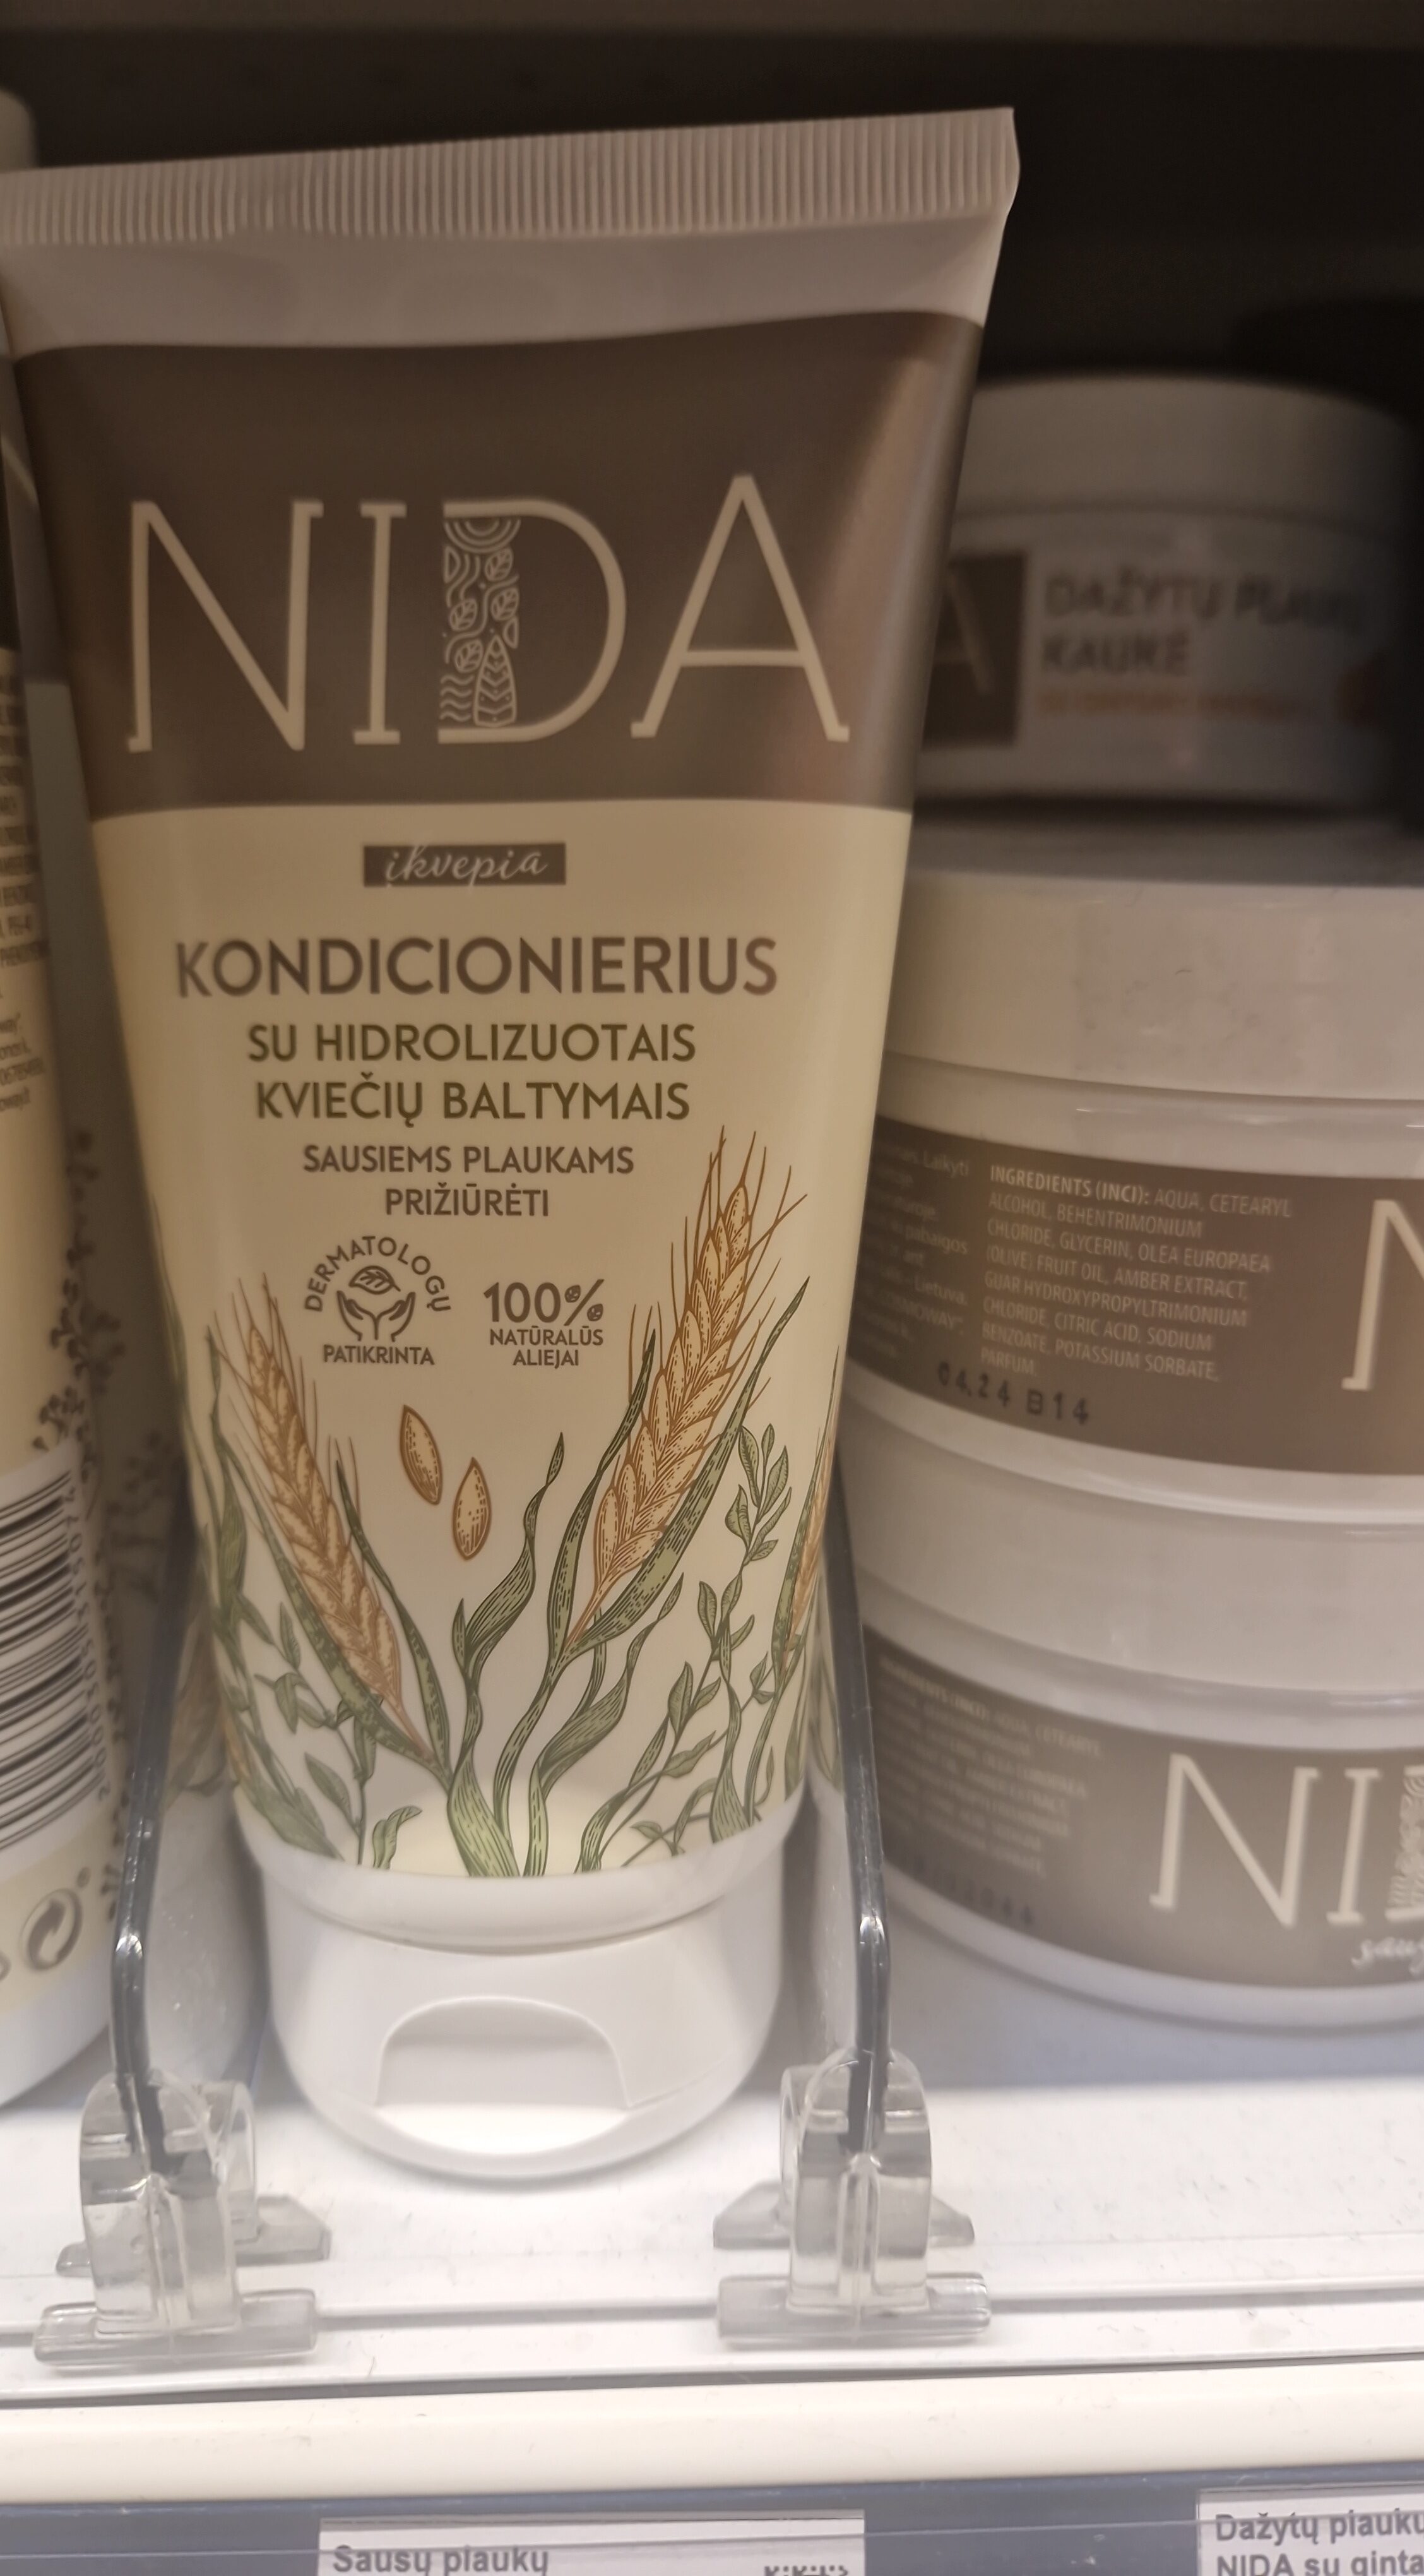 Sausų plaukų kondicionierius NIDA su kviečių baltymais - Produto - lt